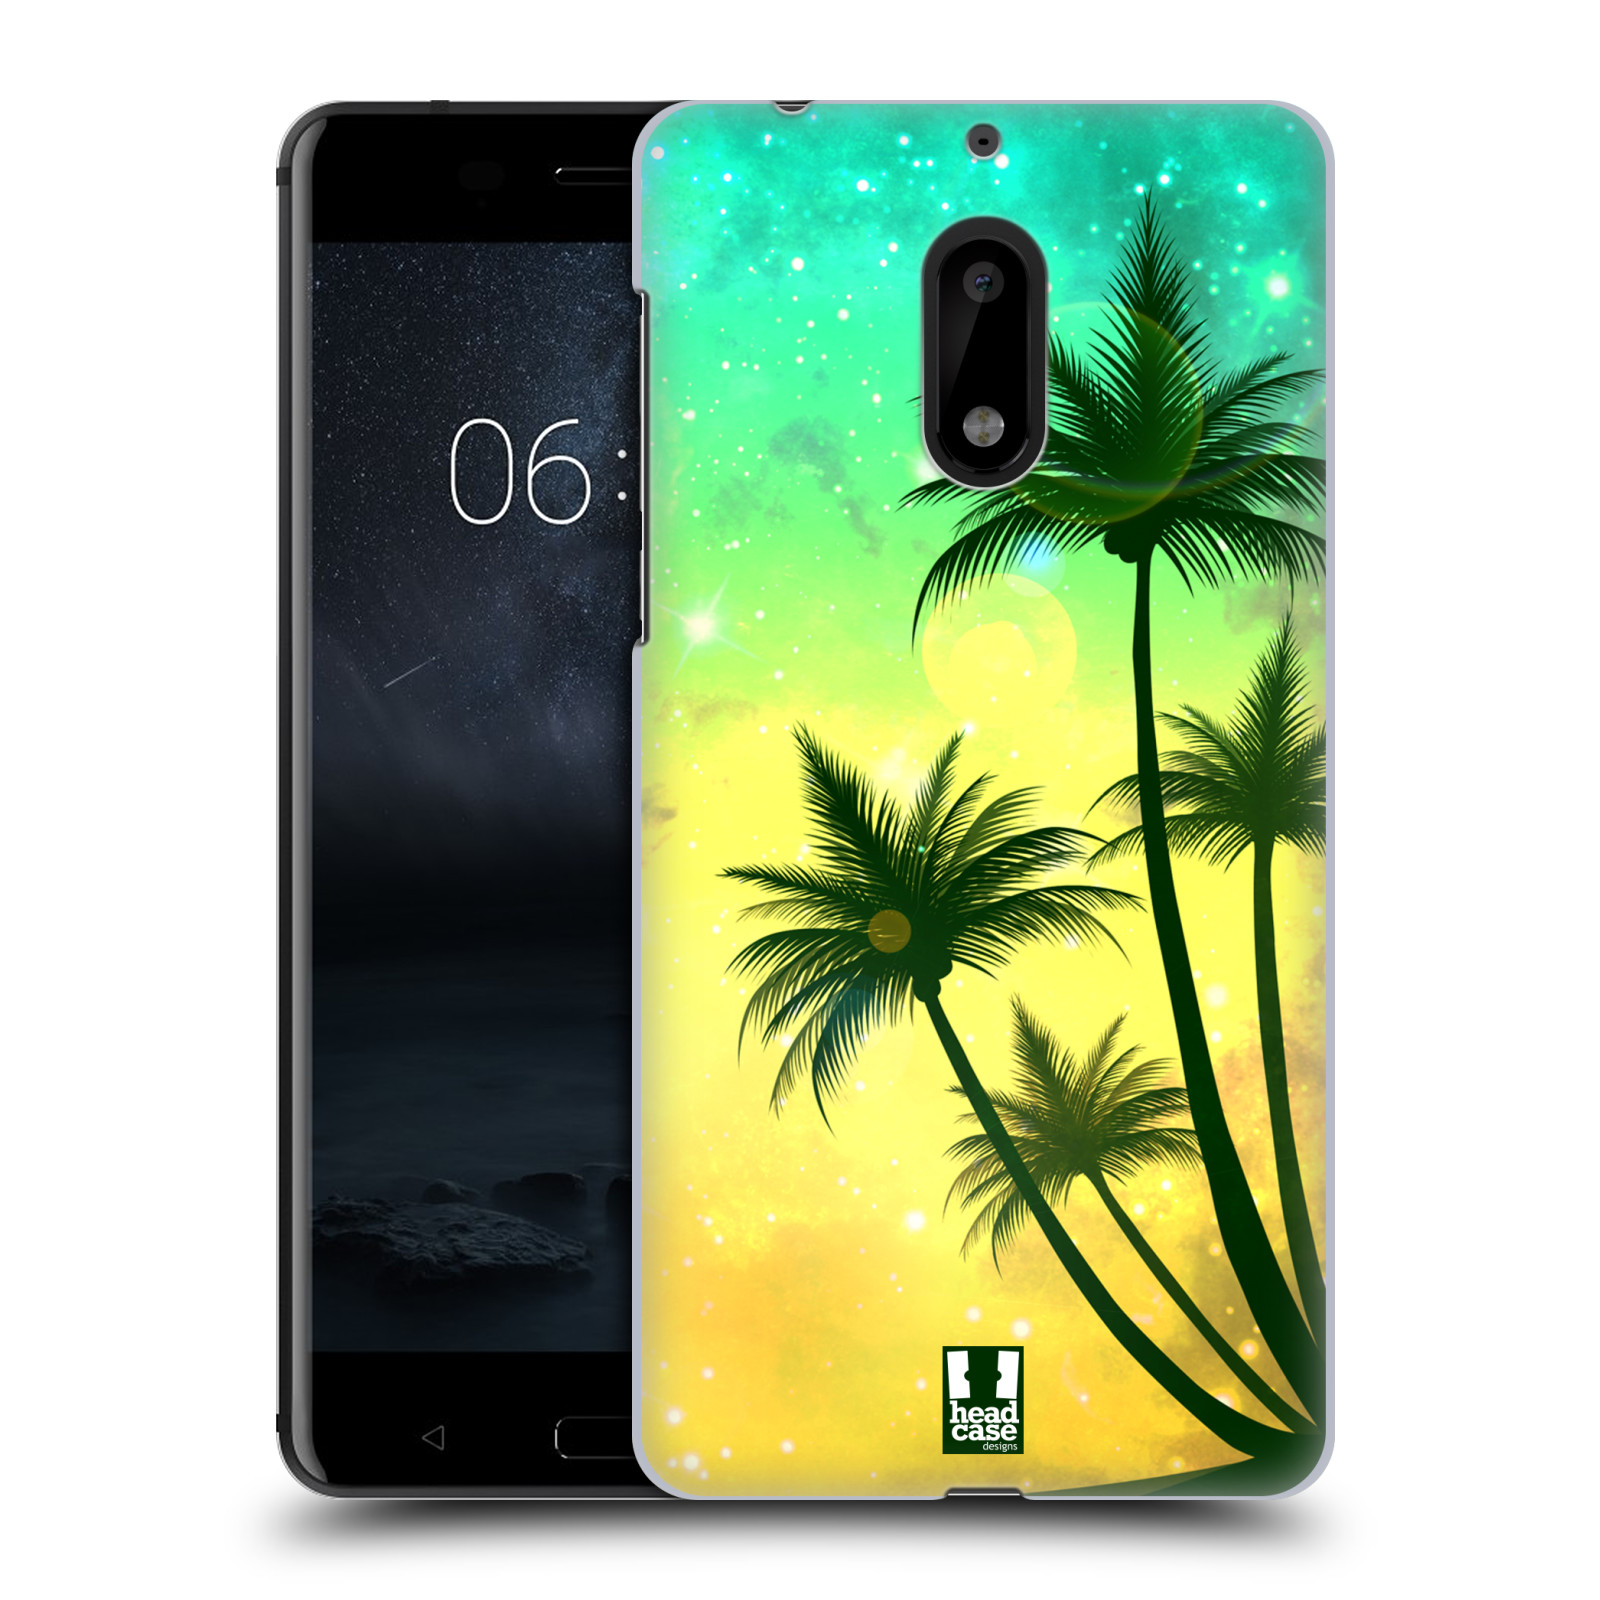 HEAD CASE plastový obal na mobil Nokia 6 vzor Kreslený motiv silueta moře a palmy TYRKYSOVÁ